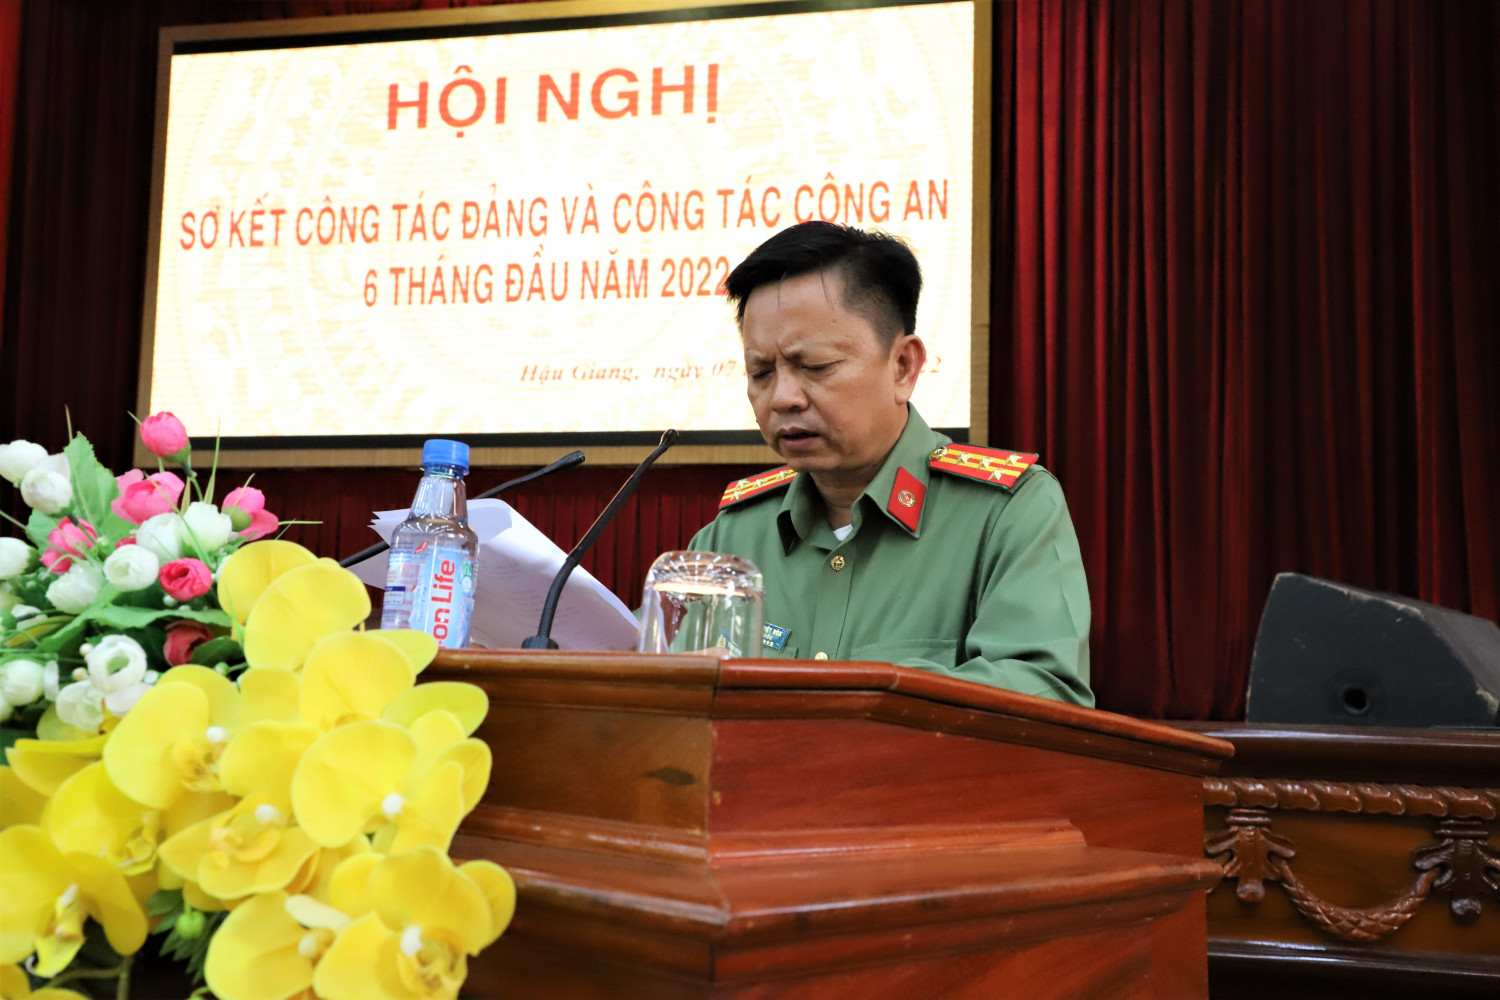 Đồng chí Huỳnh Việt Hòa, Ủy viên Ban Thường vụ Tỉnh ủy, Giám đốc Công an tỉnh phát biểu khai mạc Hội nghị